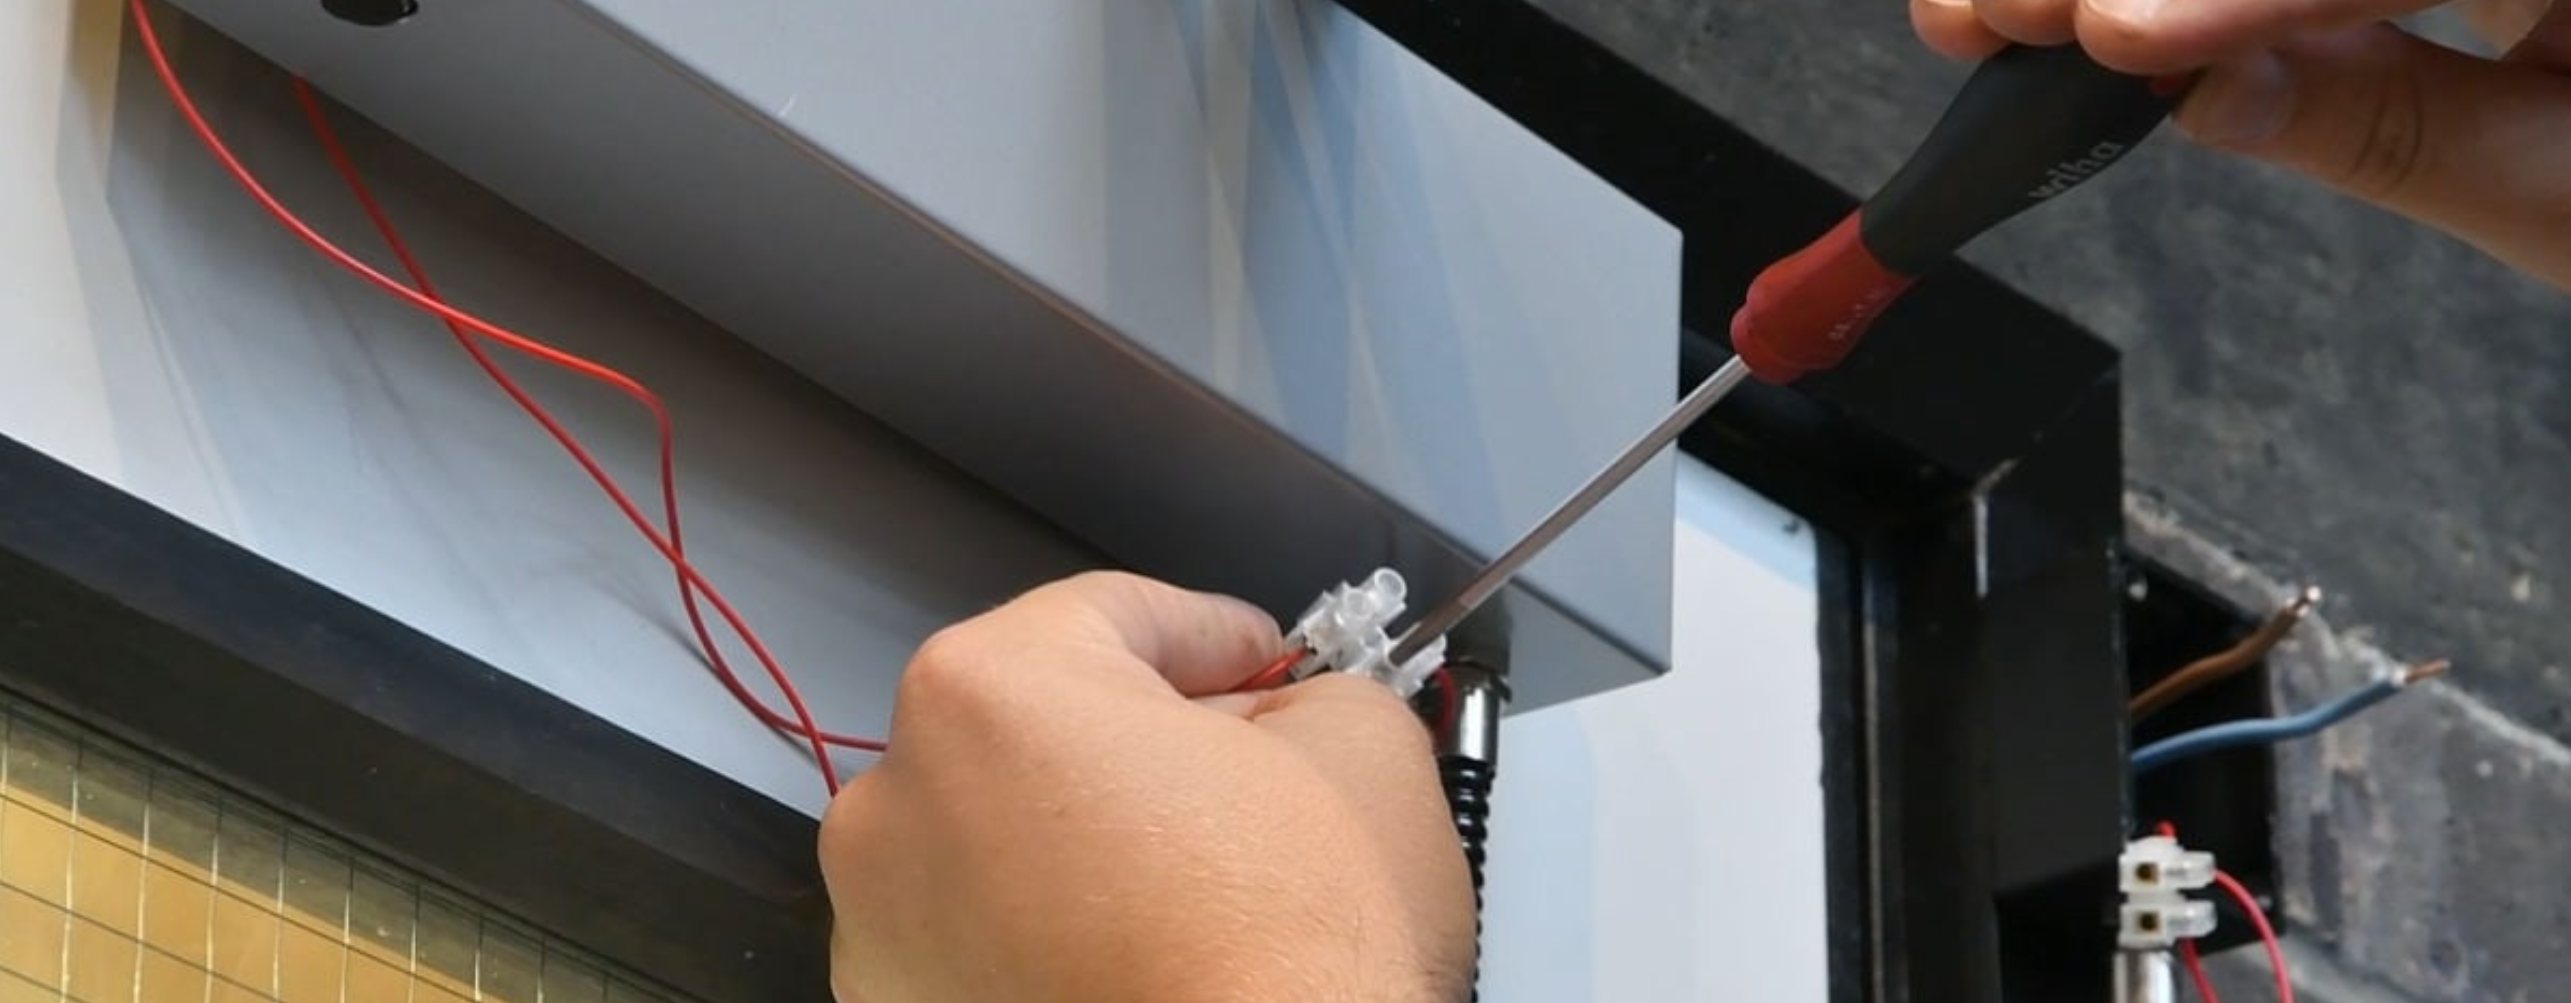 Installing an overhead magnetic door closer